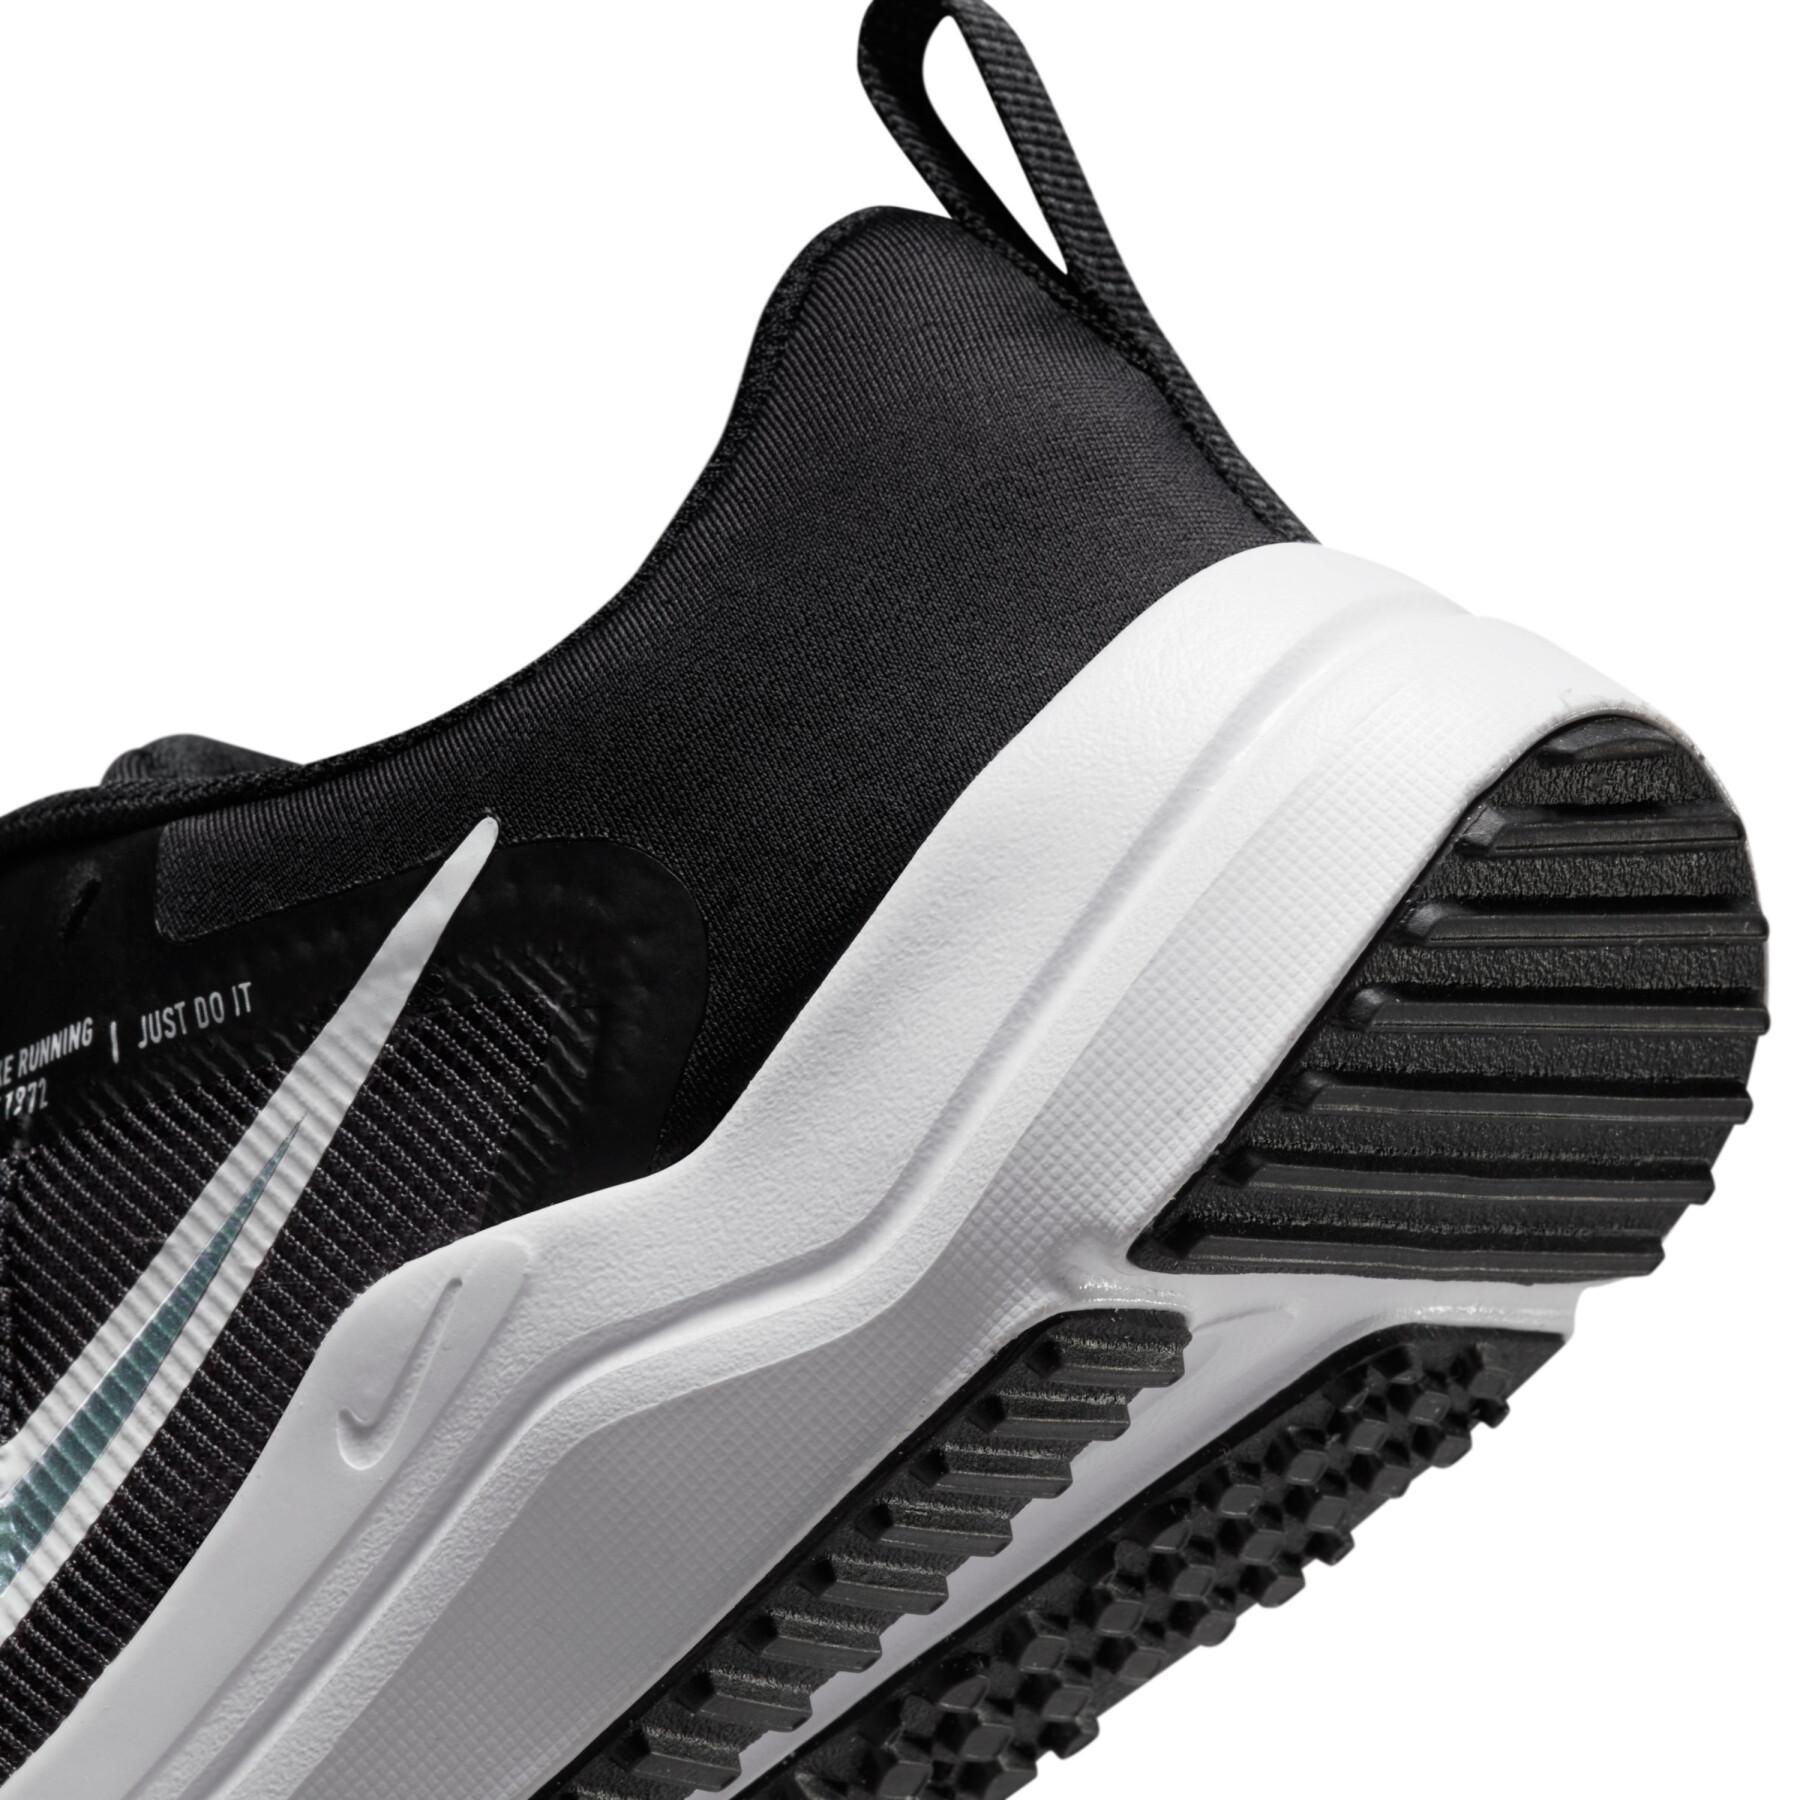 Sapatos de corrida para crianças Nike Downshifter 12